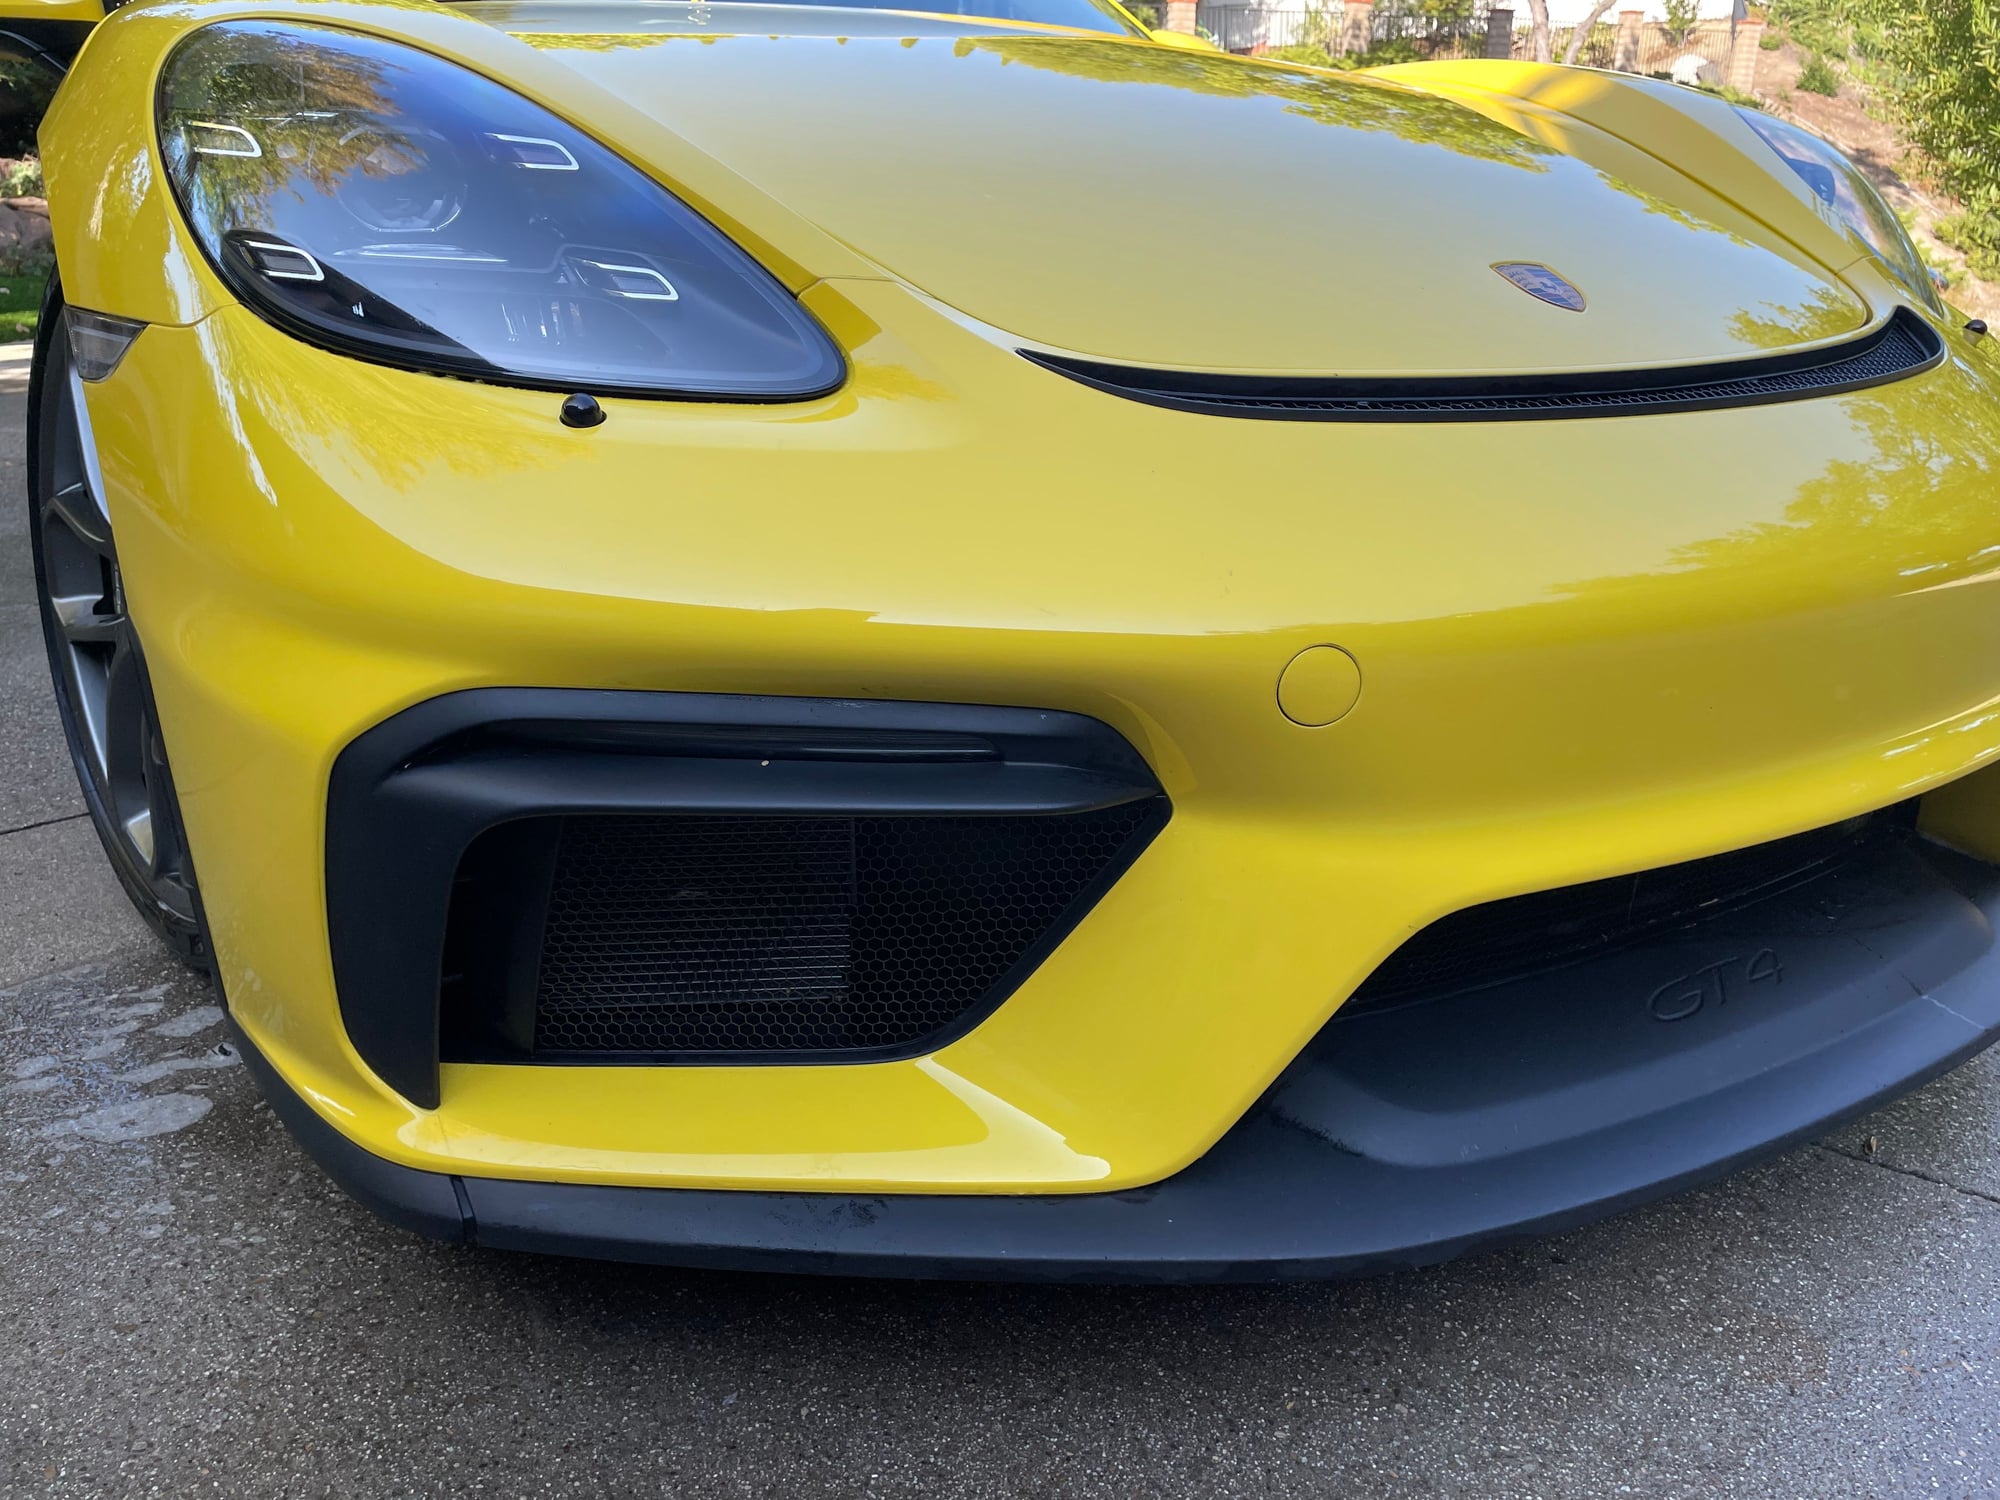 2021 Porsche 718 - 2021 GT4 PDK LWBS - CPO til Jan 1 2027 - Used - VIN Xxxxxxxxxxxxxxxx - 12,500 Miles - Automatic - Thousand Oaks, CA 91361, United States